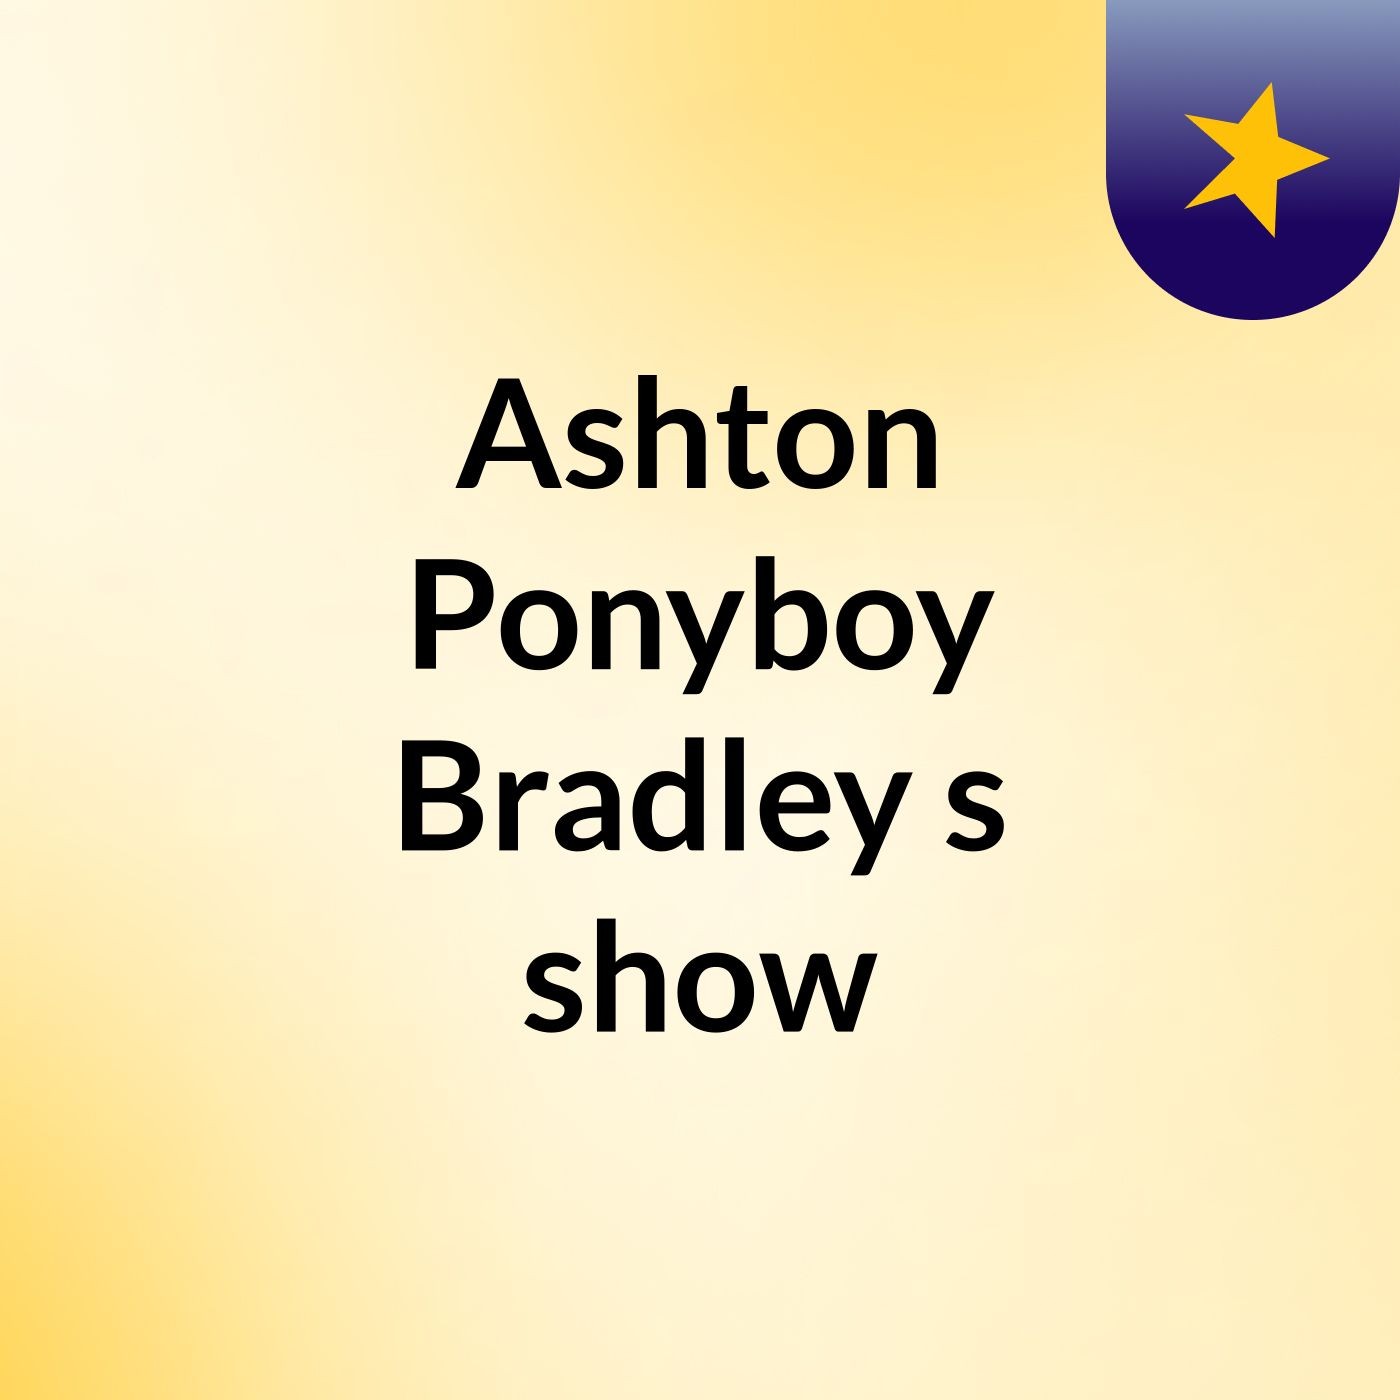 Ashton Ponyboy Bradley's show